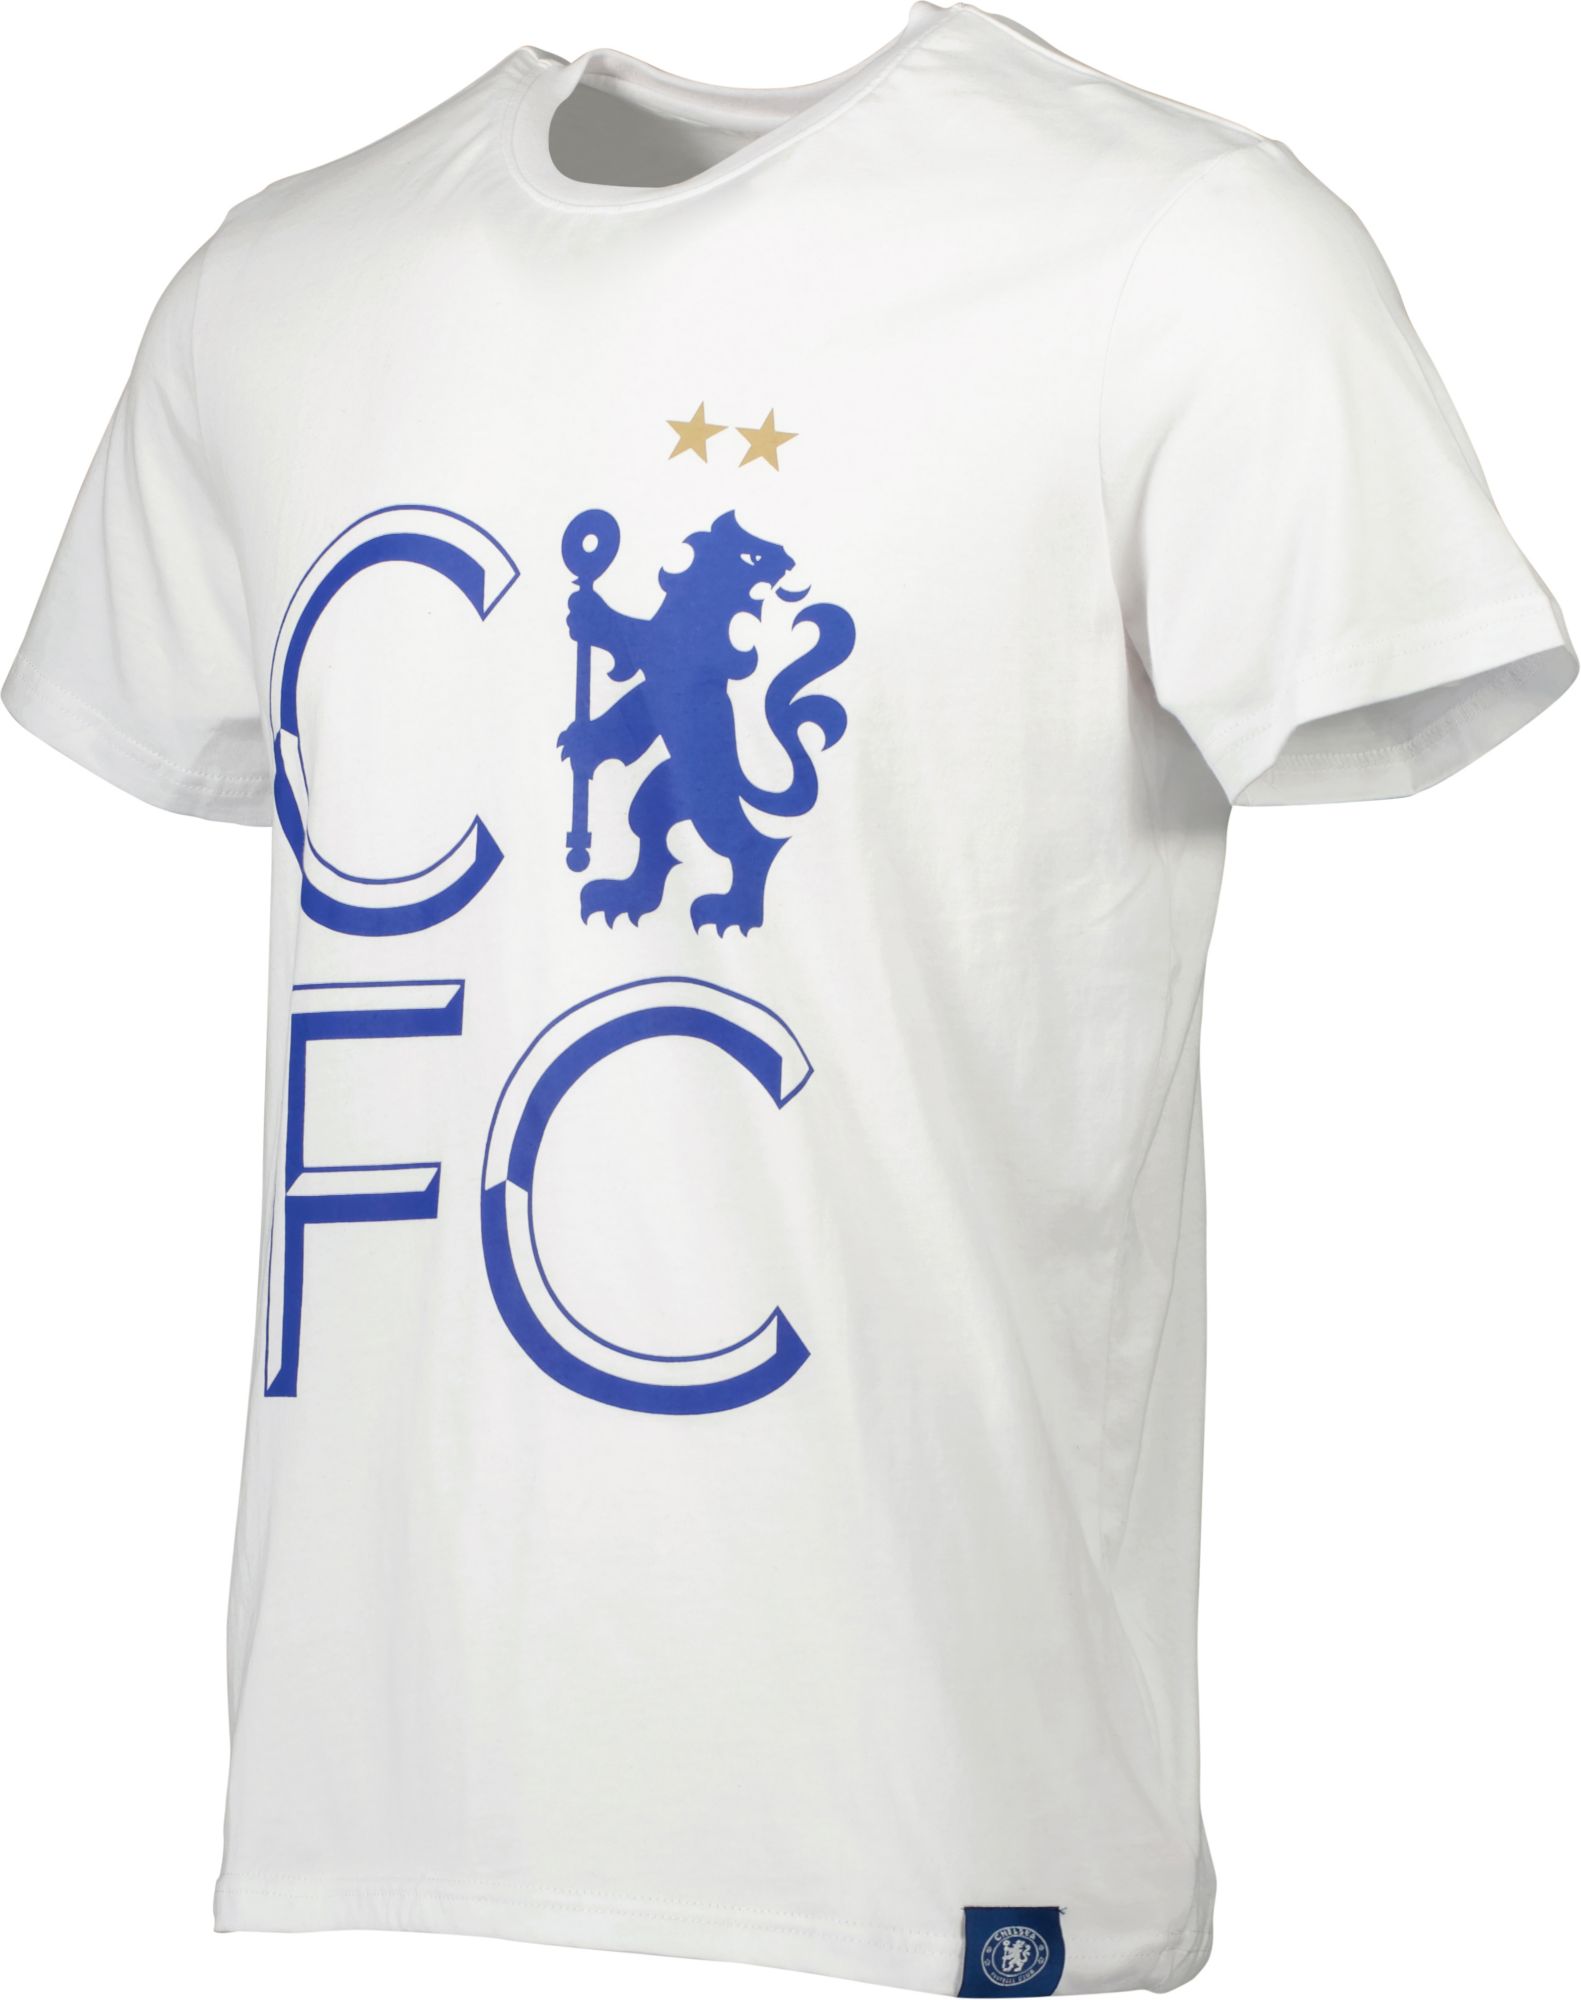 Sport Design Sweden Chelsea FC Retro White T-Shirt